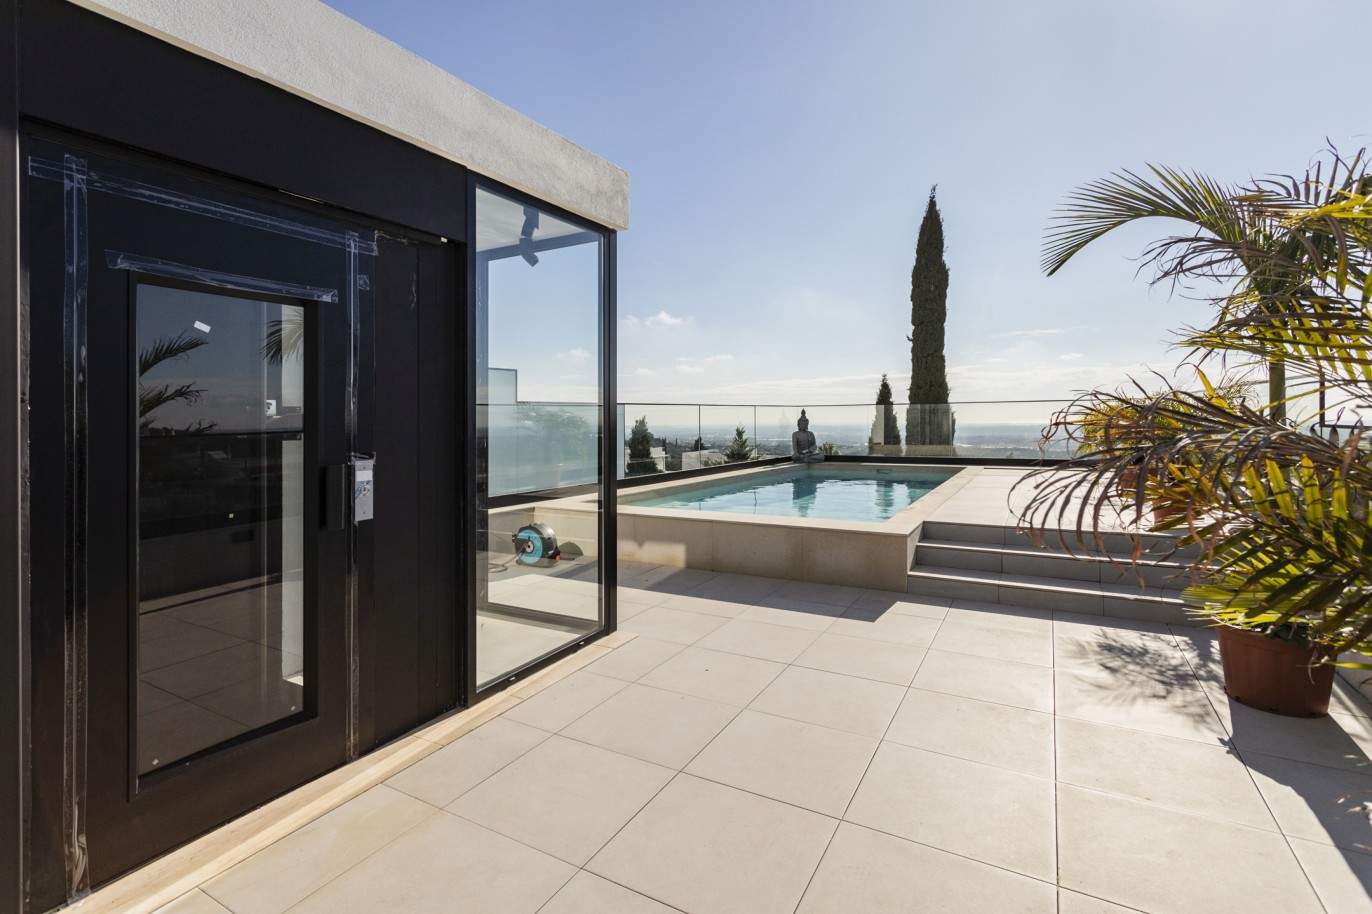 Moradia V3, com piscina, para venda em Santa Barbara de Nexe, Algarve_213419